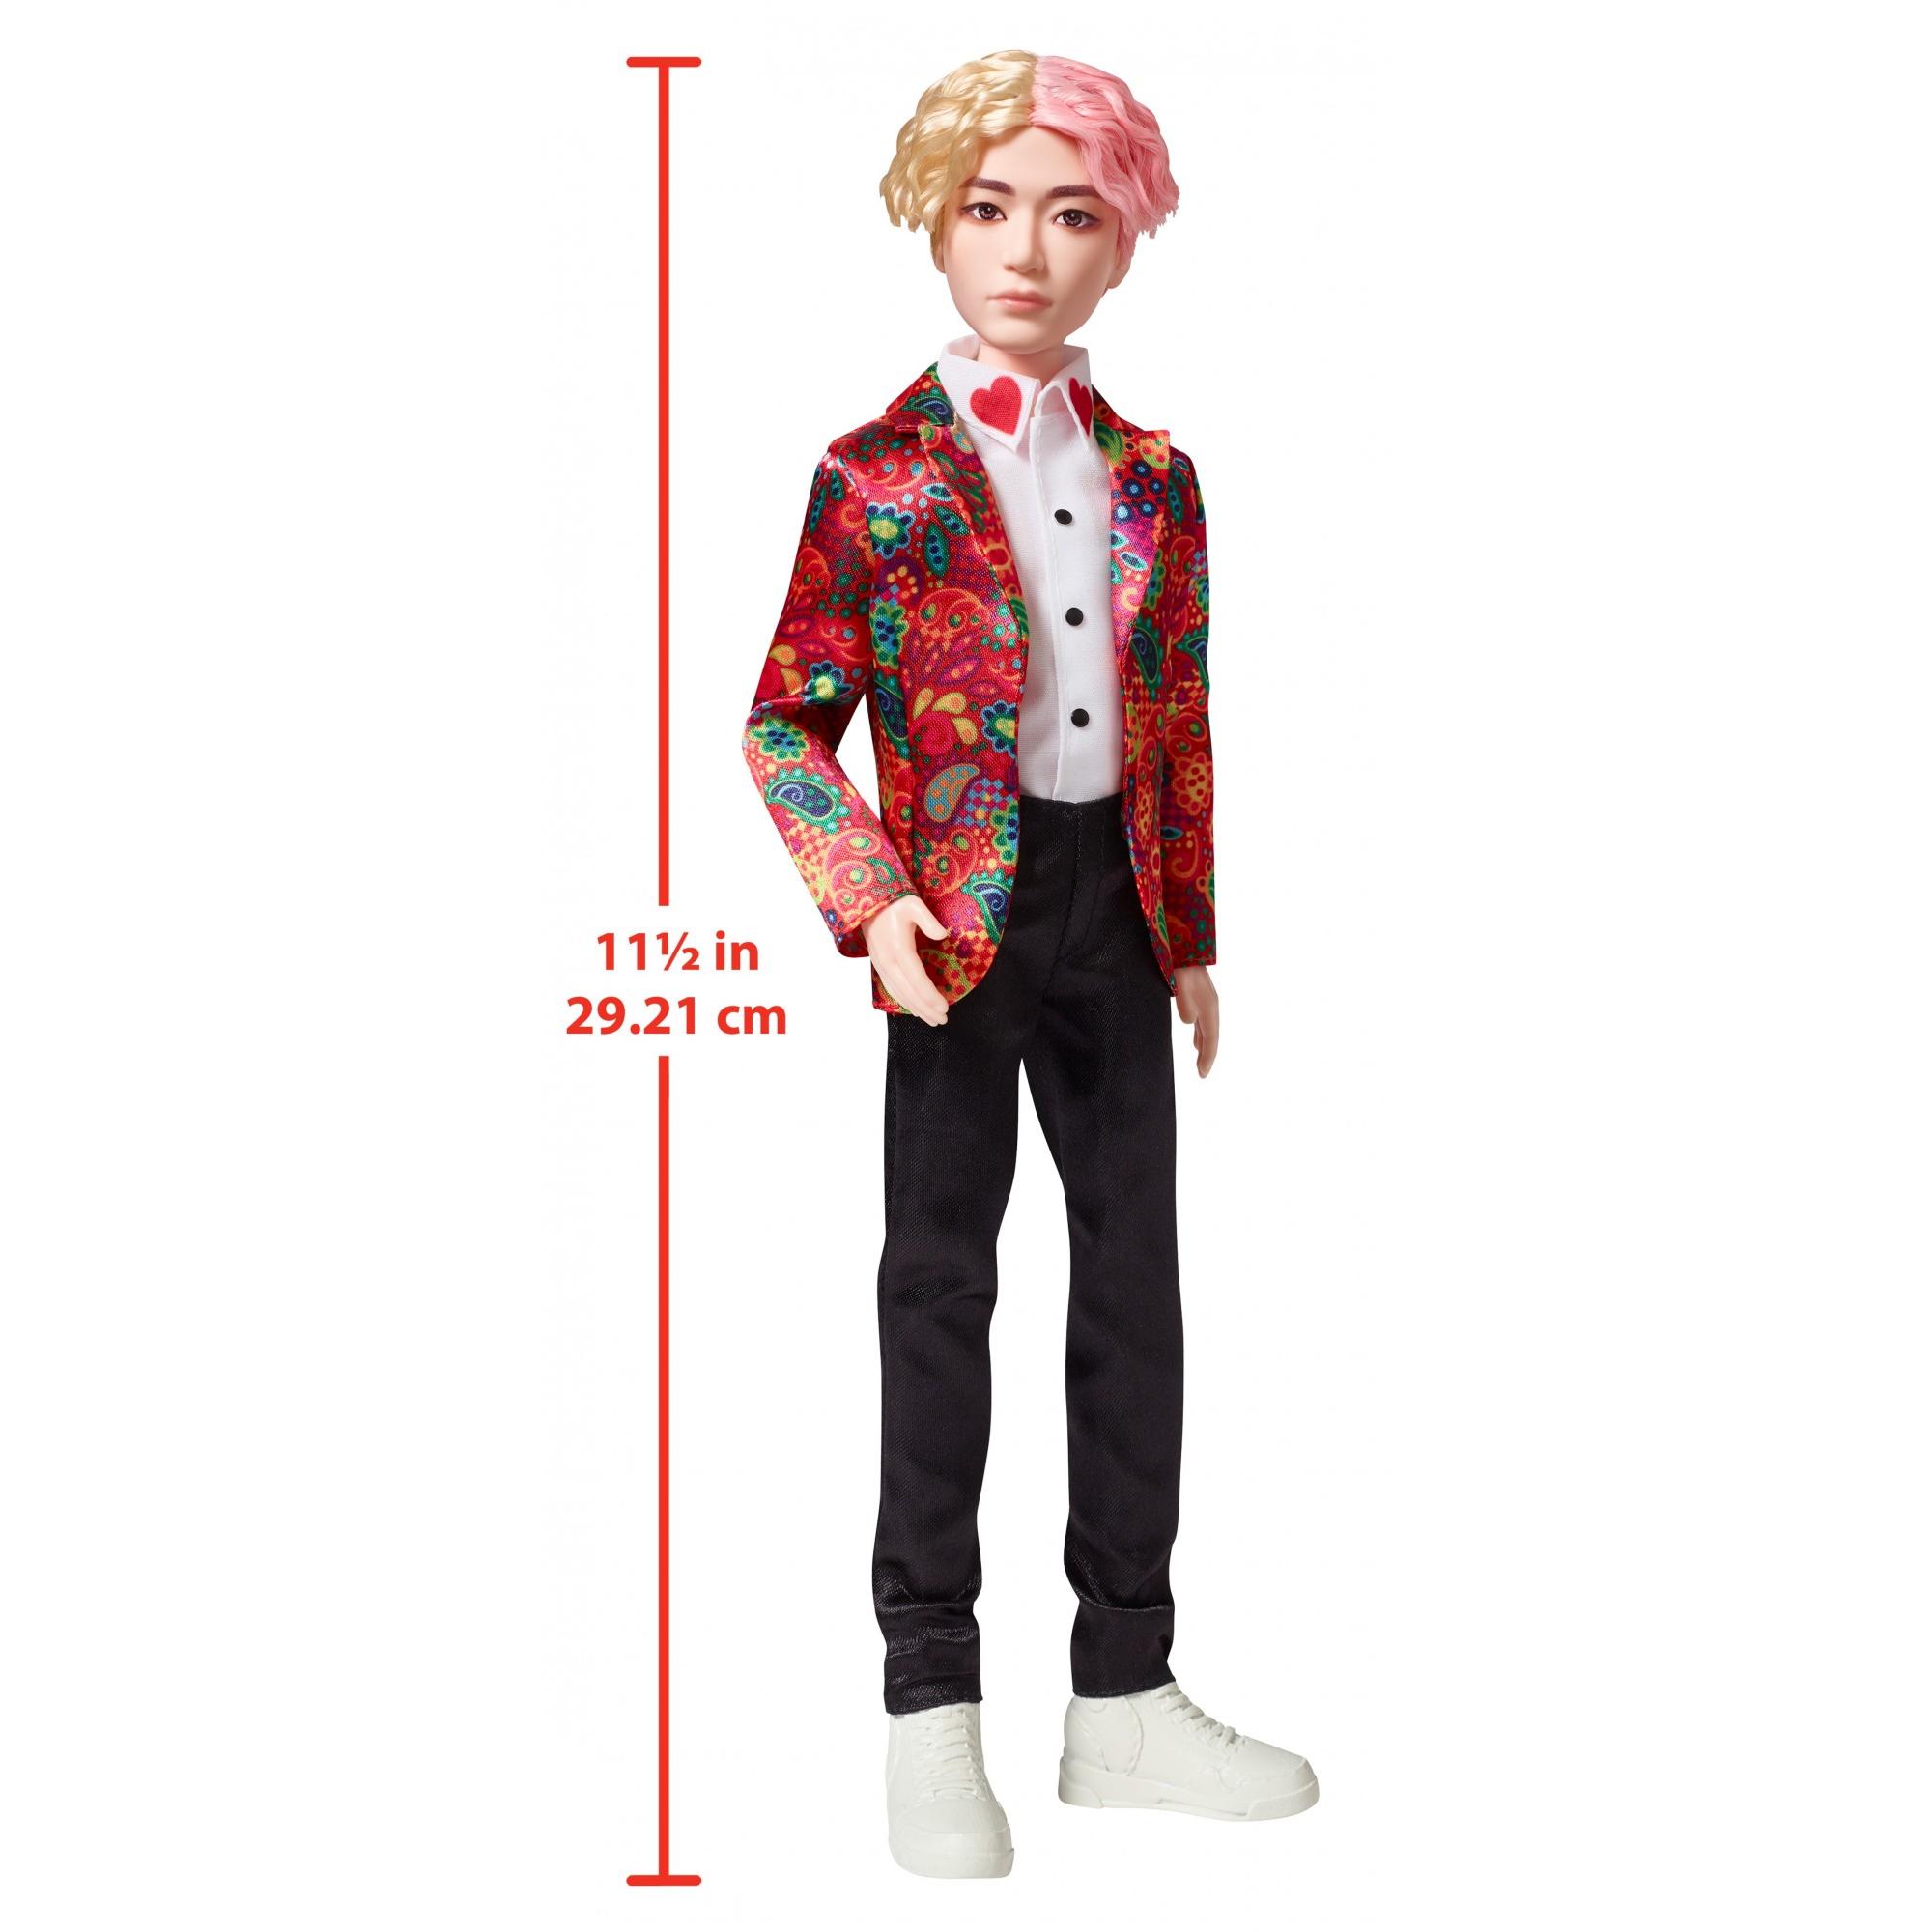 BTS V Idol Doll - image 4 of 8